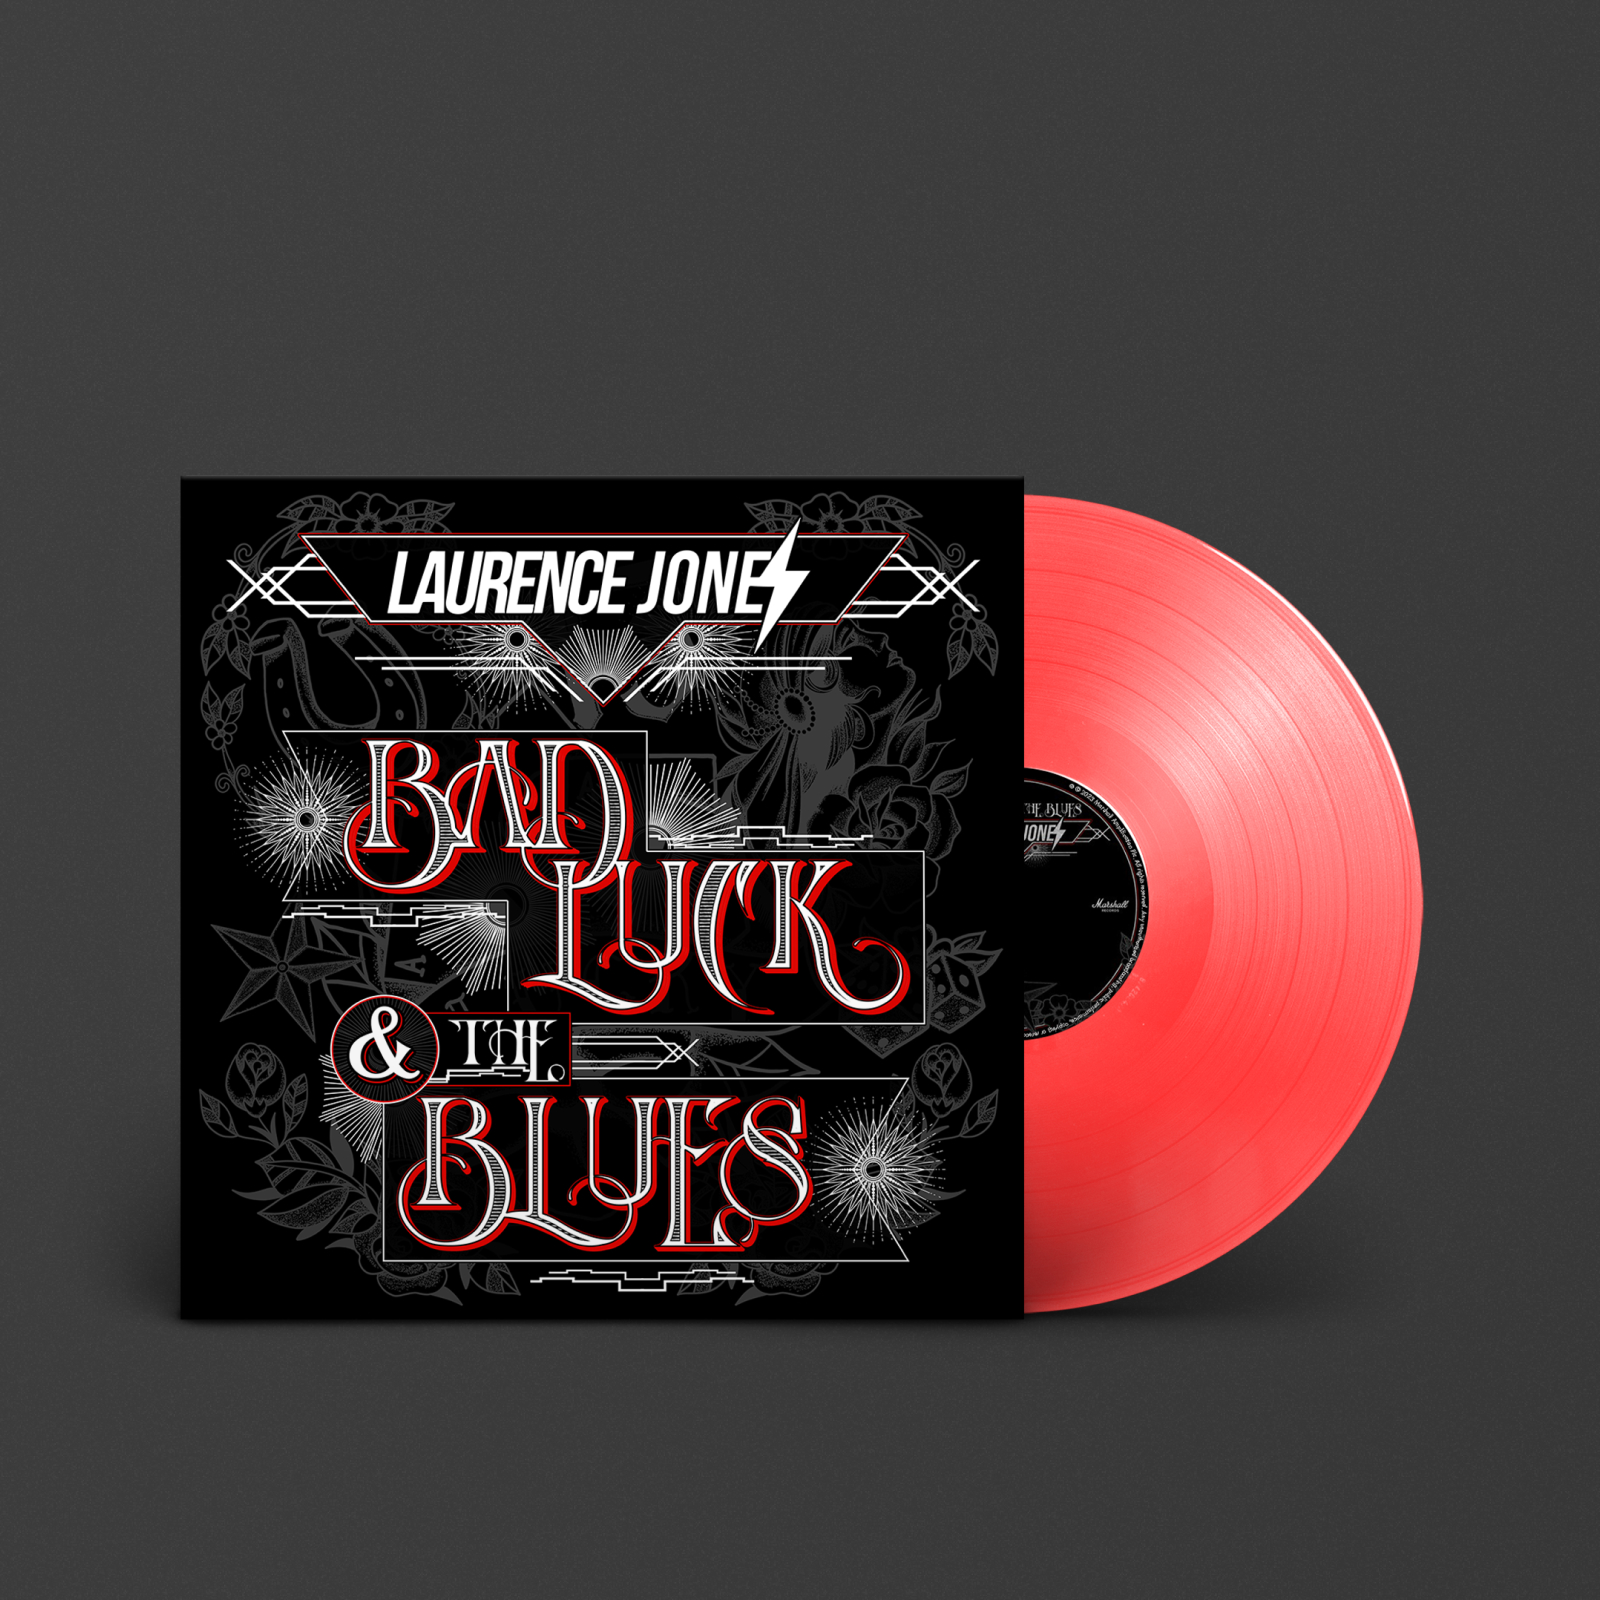 ローレンス・ジョーンズ」の赤盤レコード「Bad luck & the Blues」。